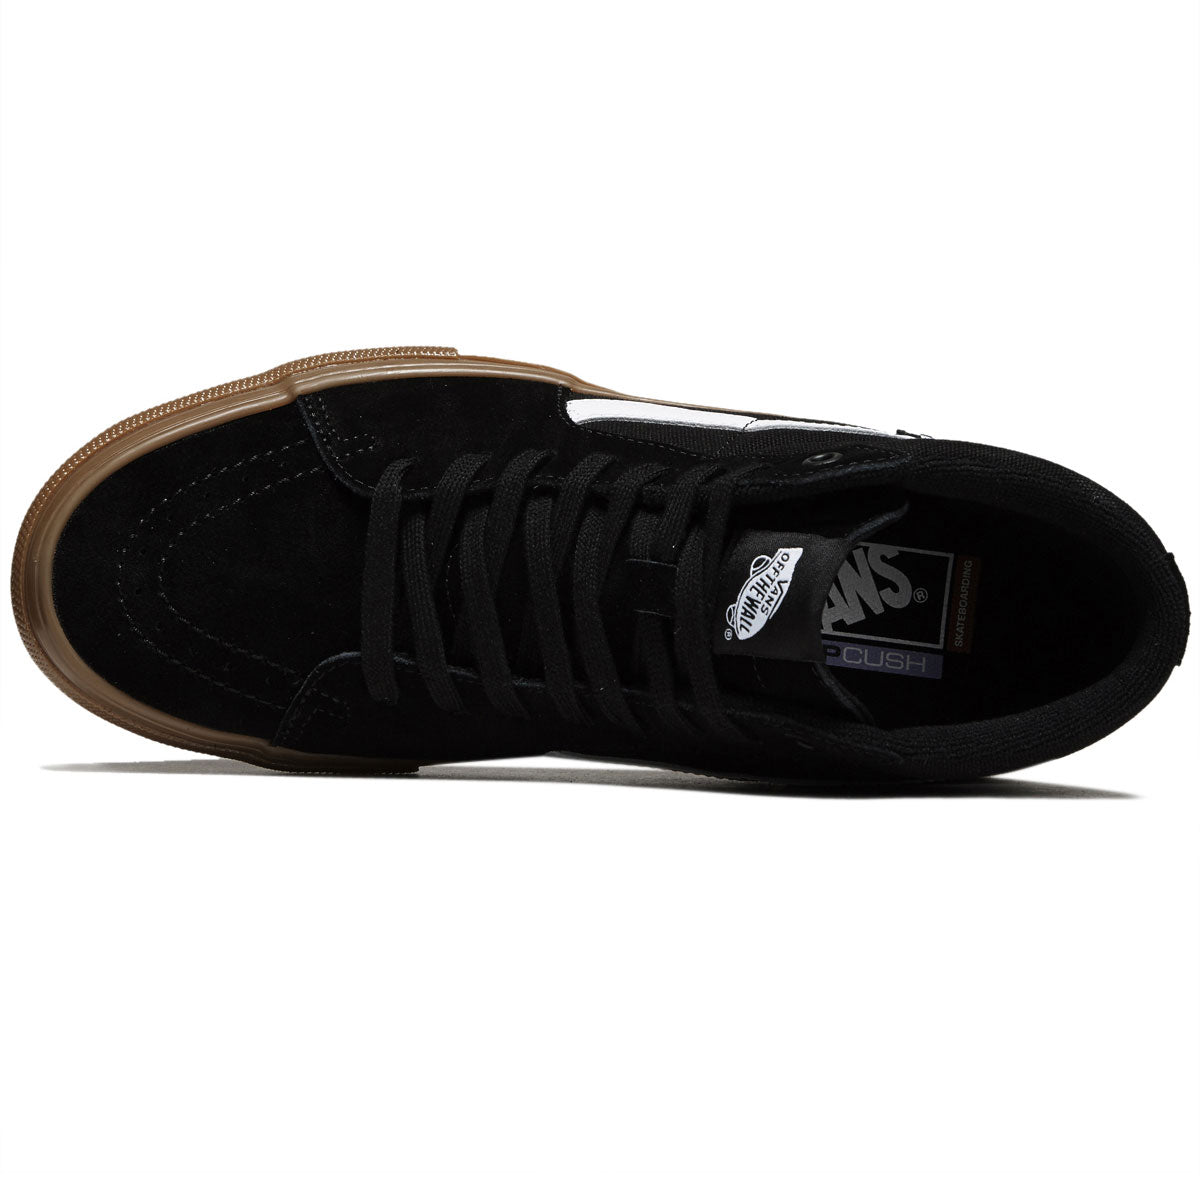 Vans Skate Sk8-hi Shoes - Black/Gum image 3